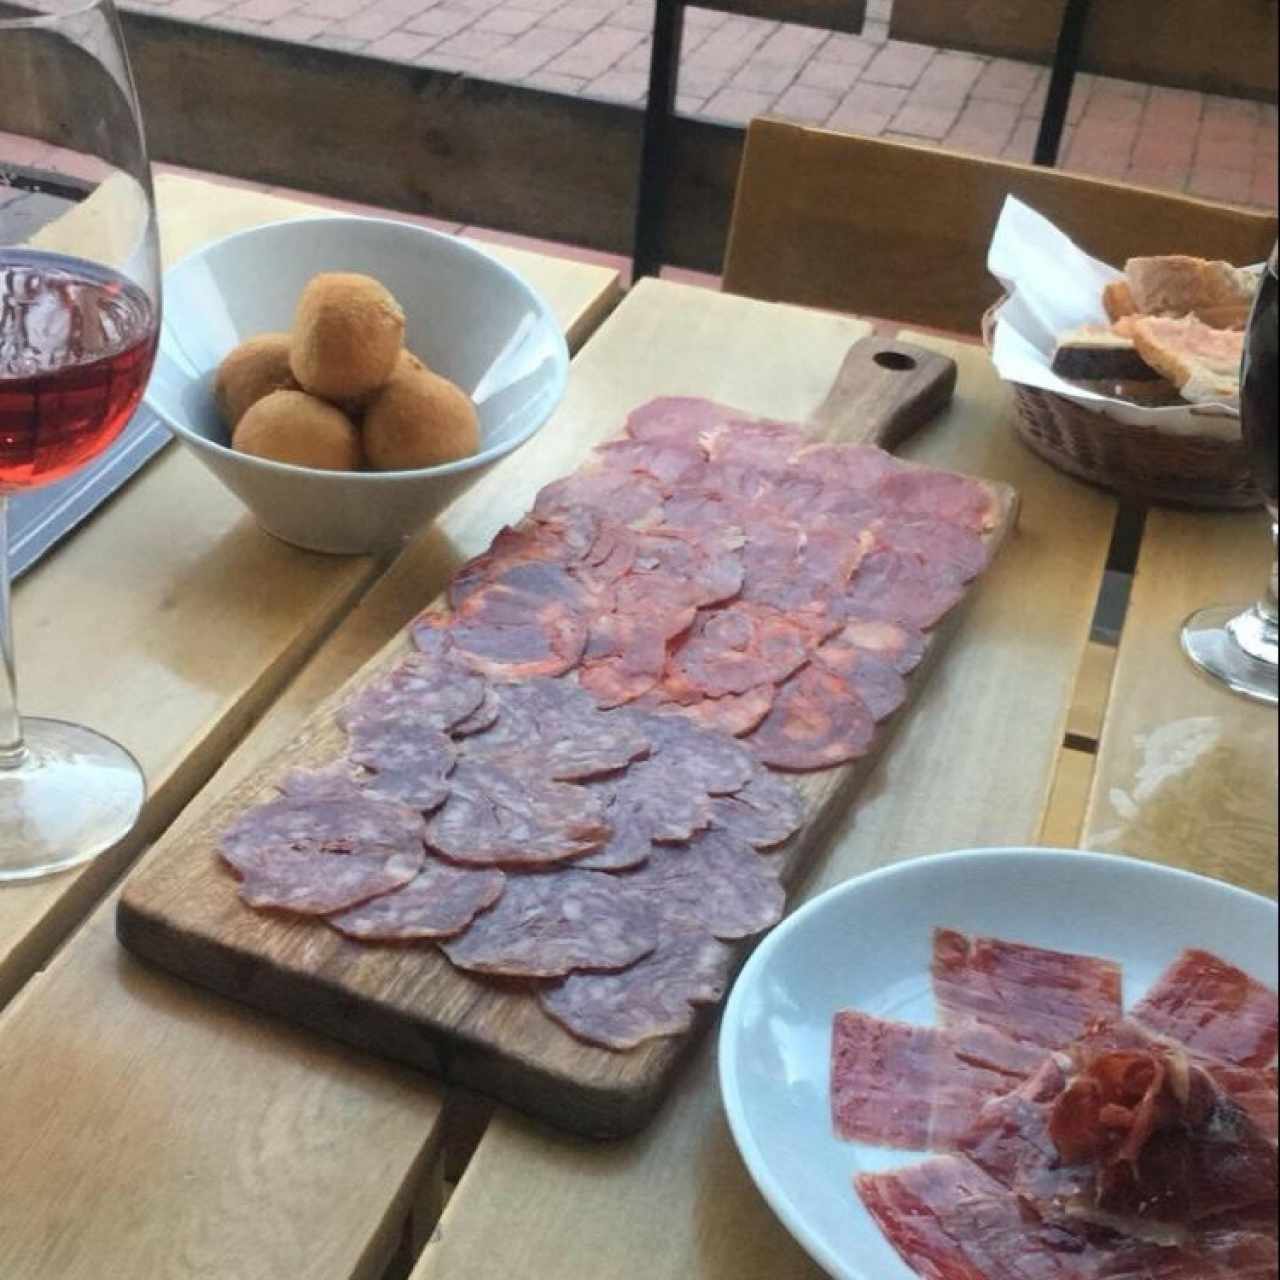 Tabla de jamones ibericos, croquetas de jamon iberico y queso manchego gratinado (lo sirven en tostadas españolas), todo acompaño de vino rosado. 